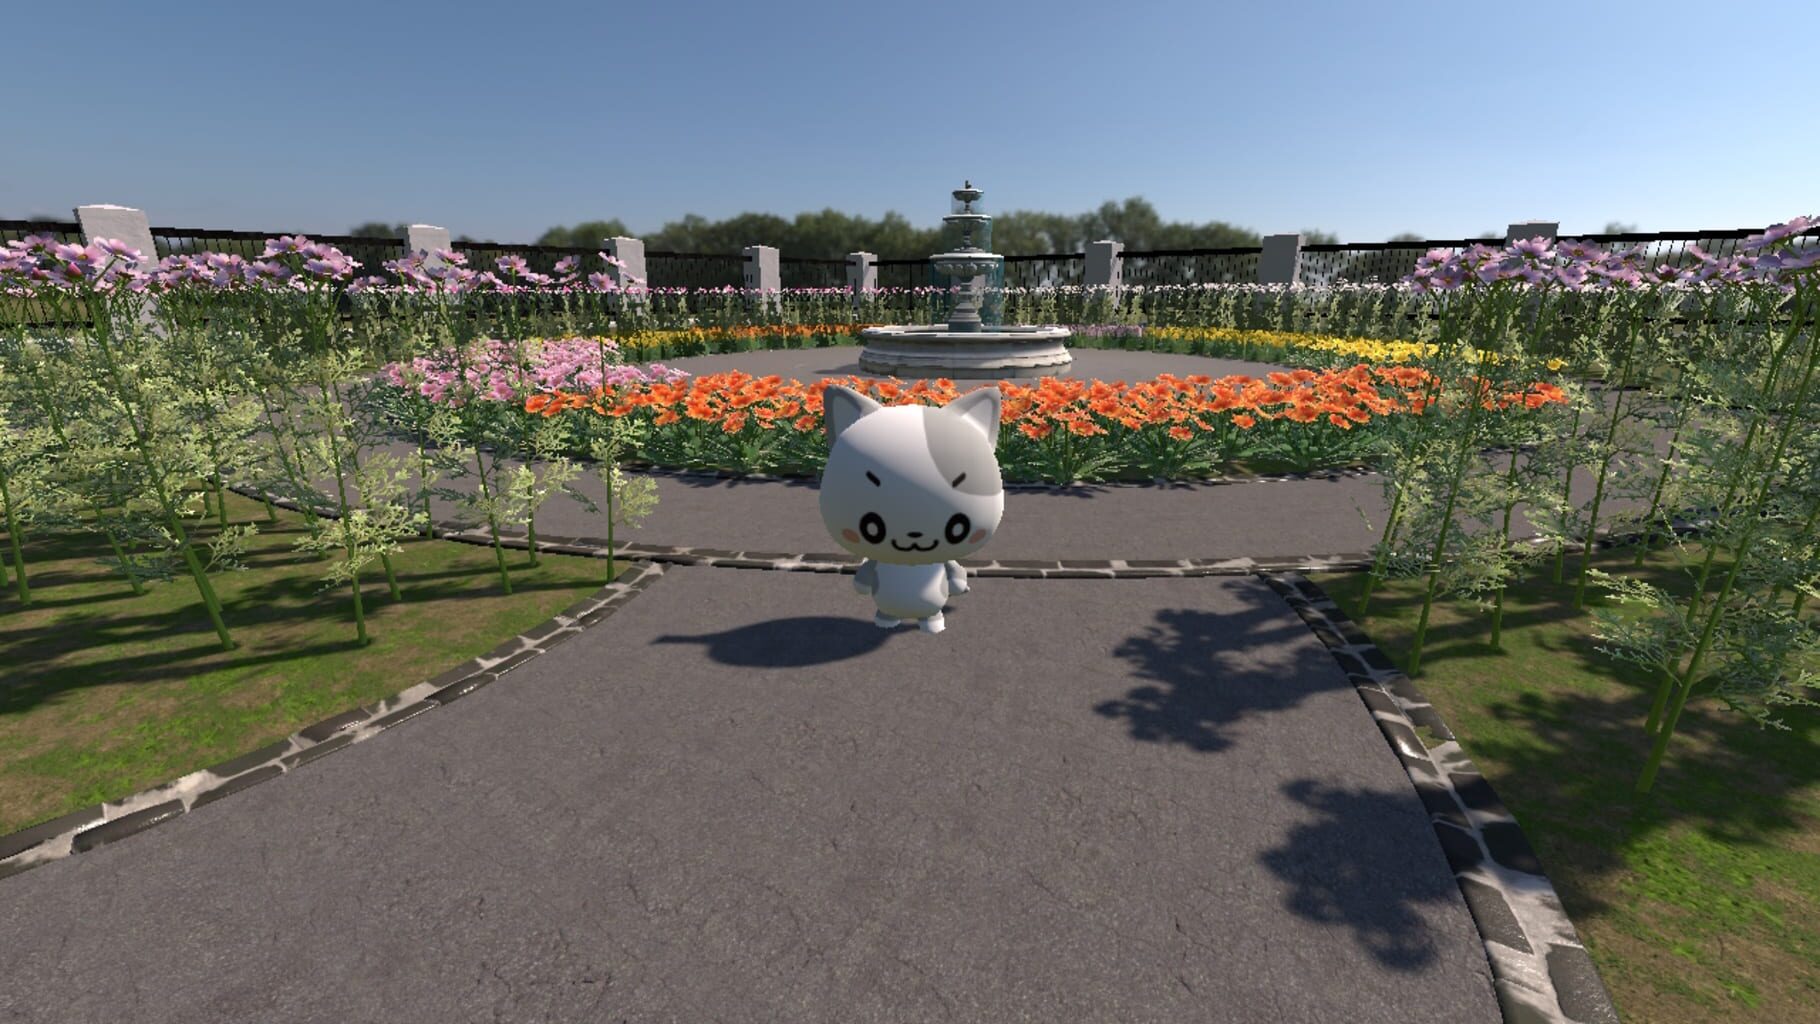 Nyanzou & Kumakichi: Let's make a flower garden screenshot